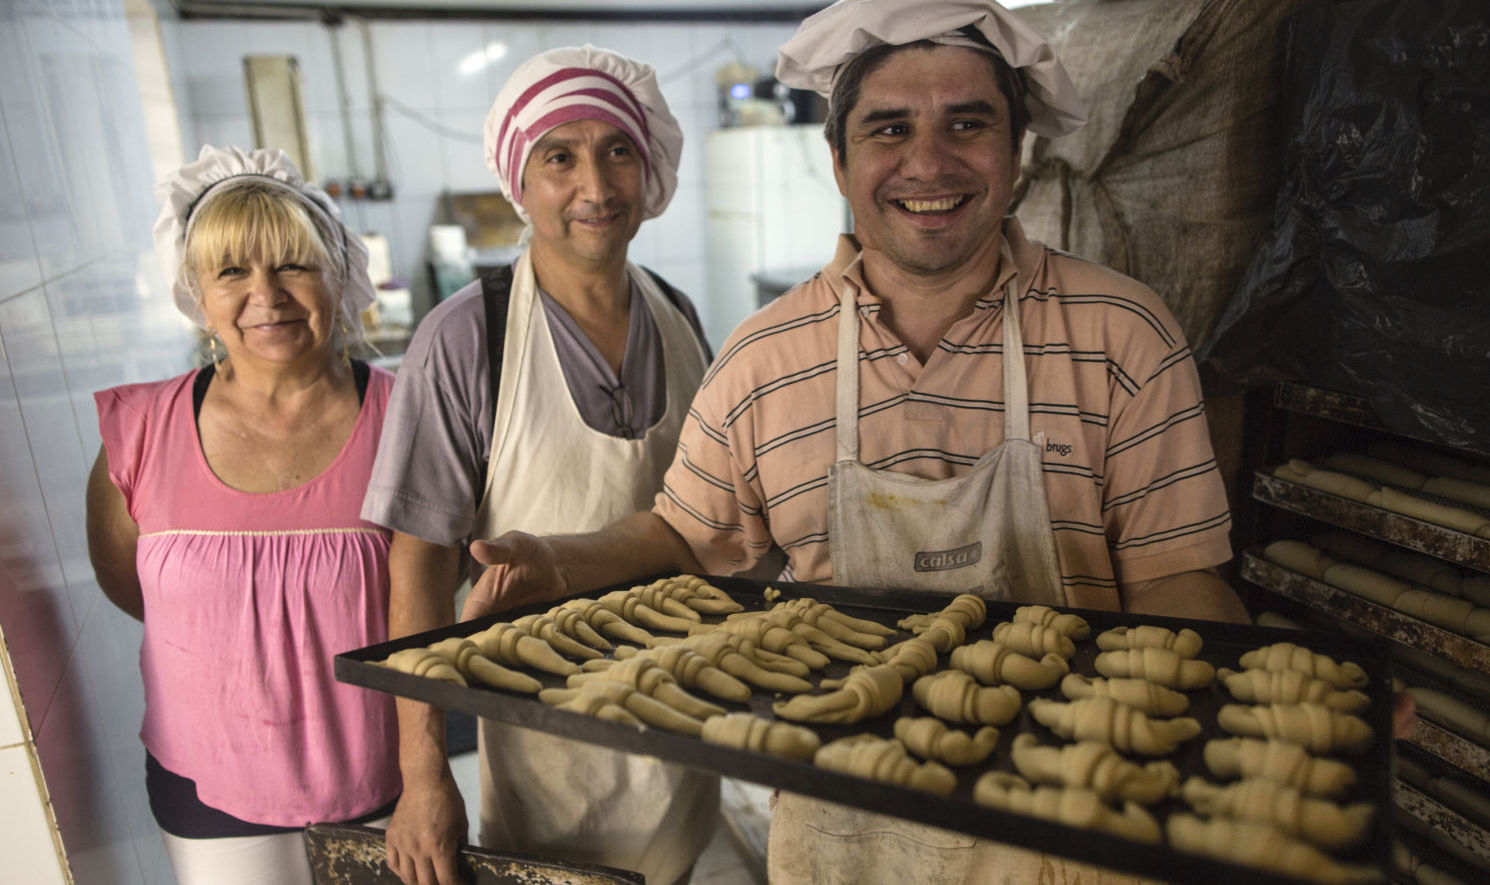 Community bakery "La Masa Critica", near La Juanita cooperative, Laferrere, Buenos Aires, Argentina.